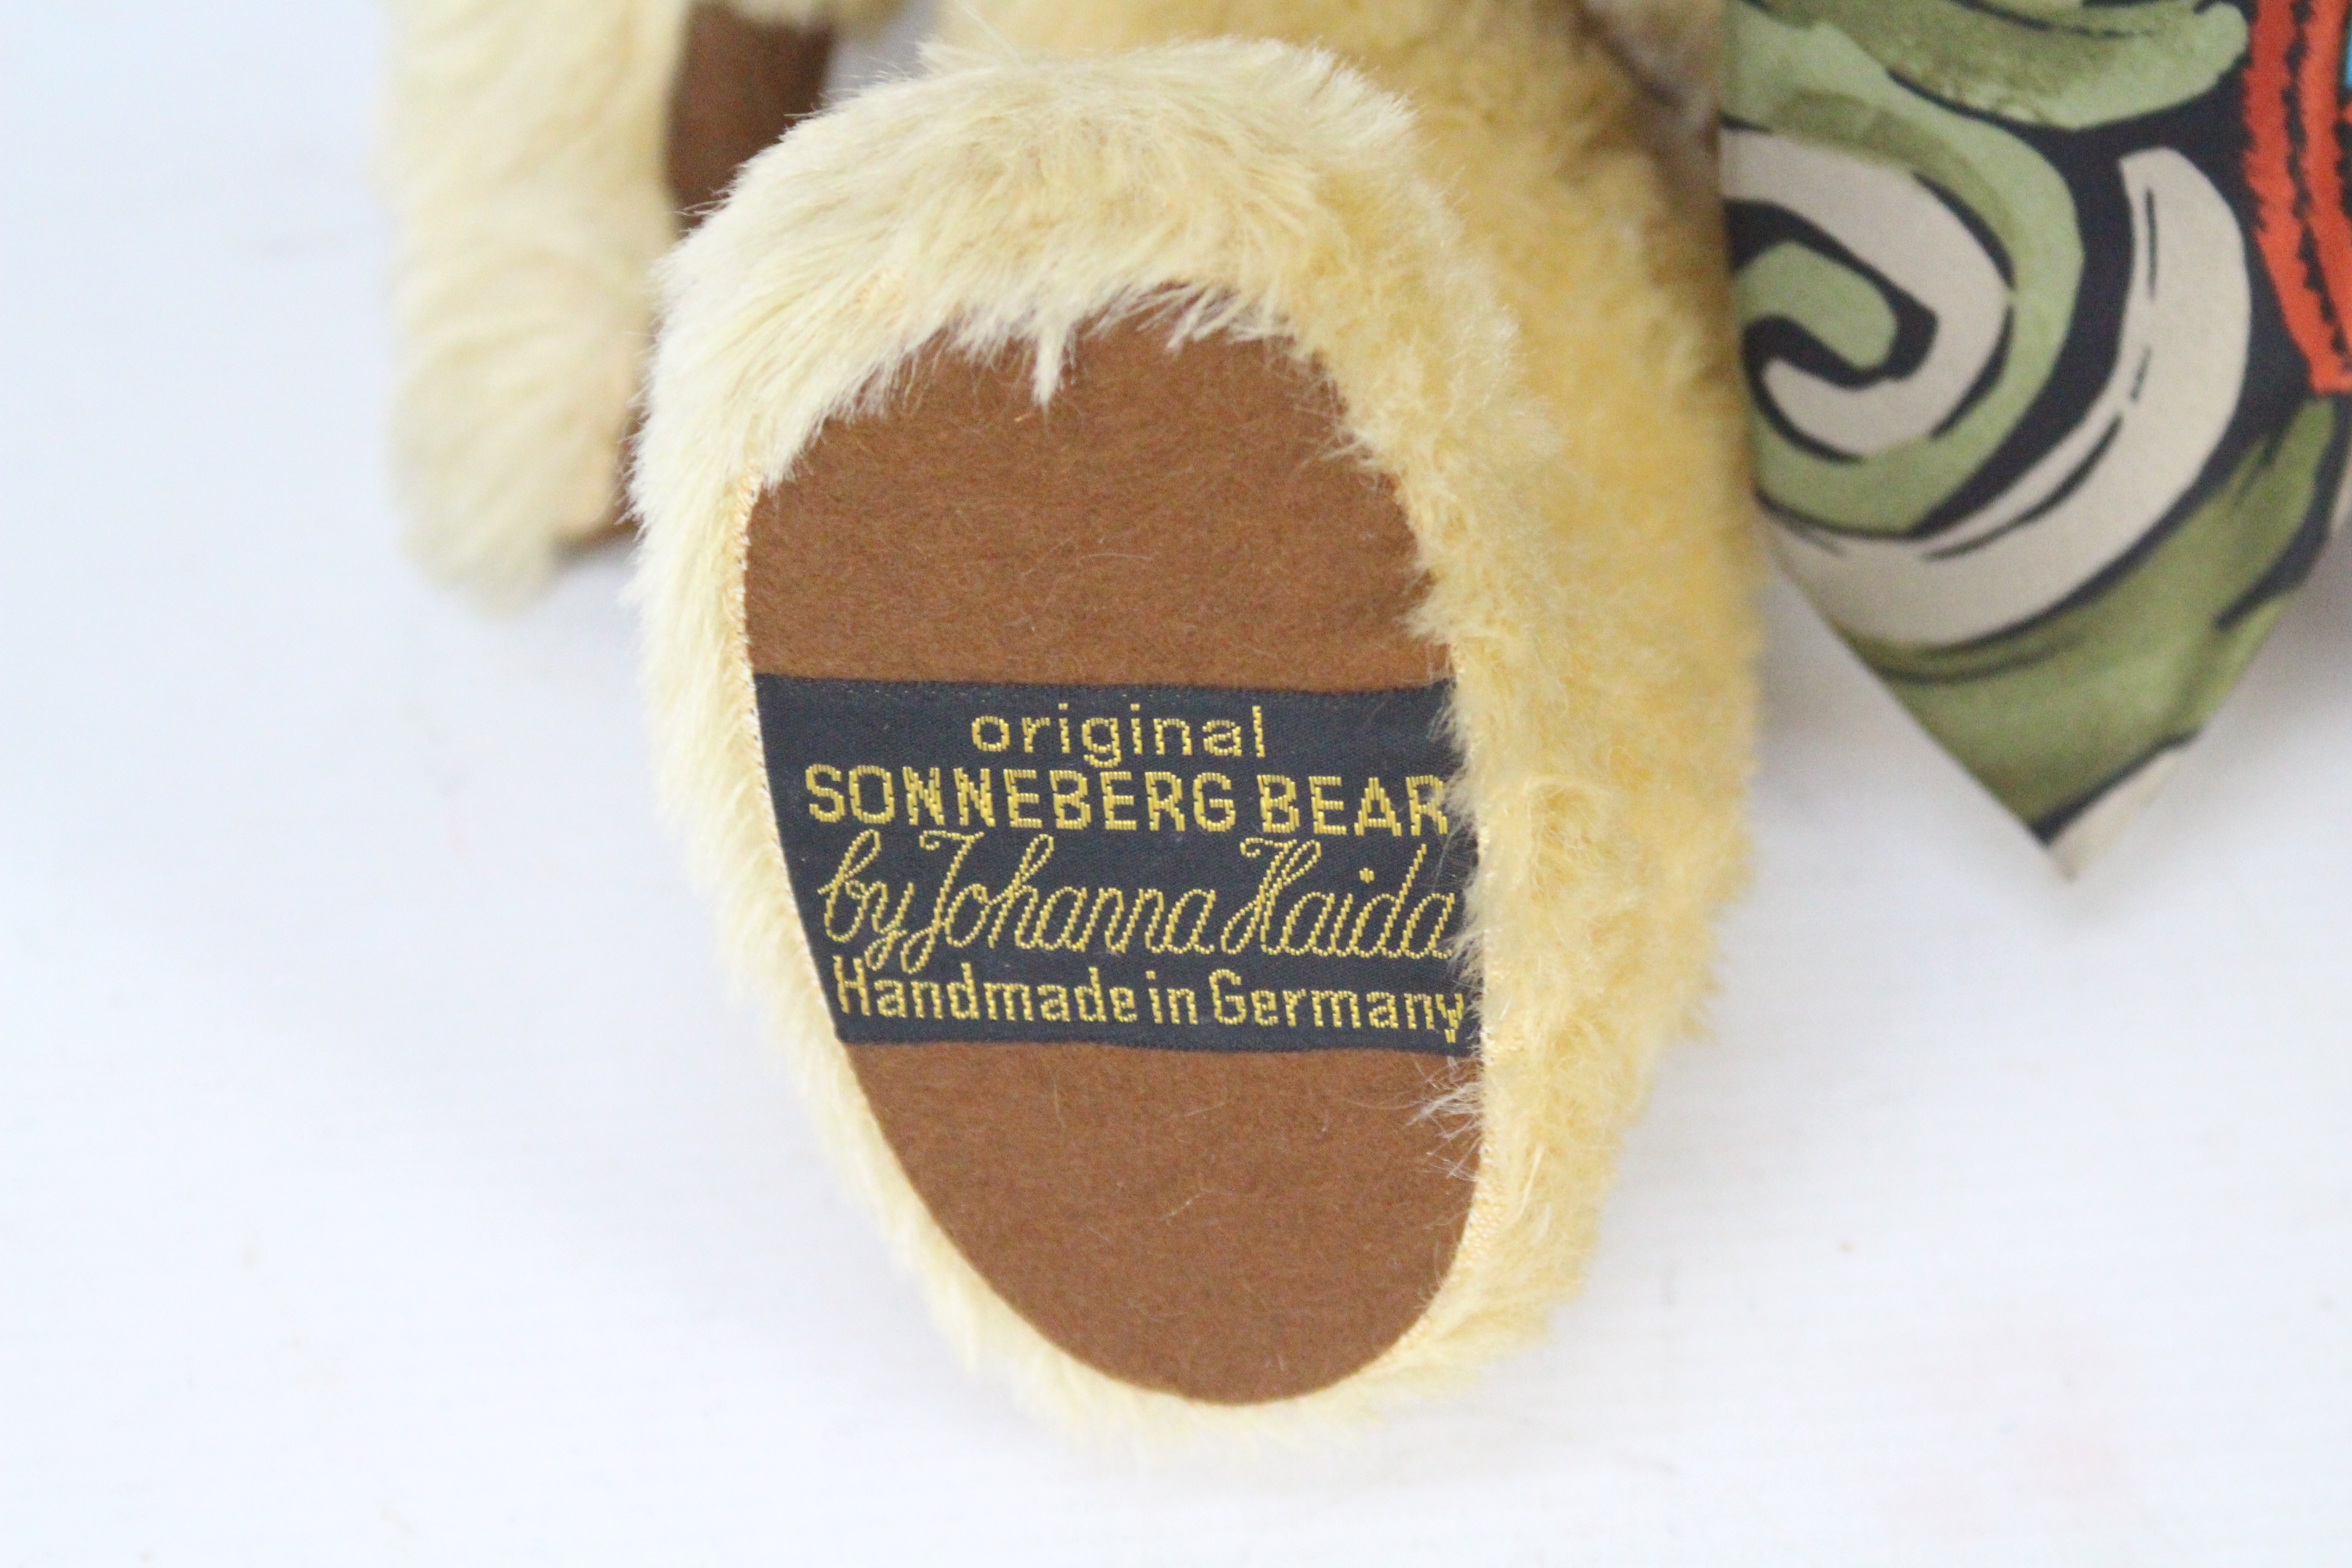 Sonneberg Bear - A blonde mohair teddy bear with growler by Johanna Haida, - Image 4 of 6